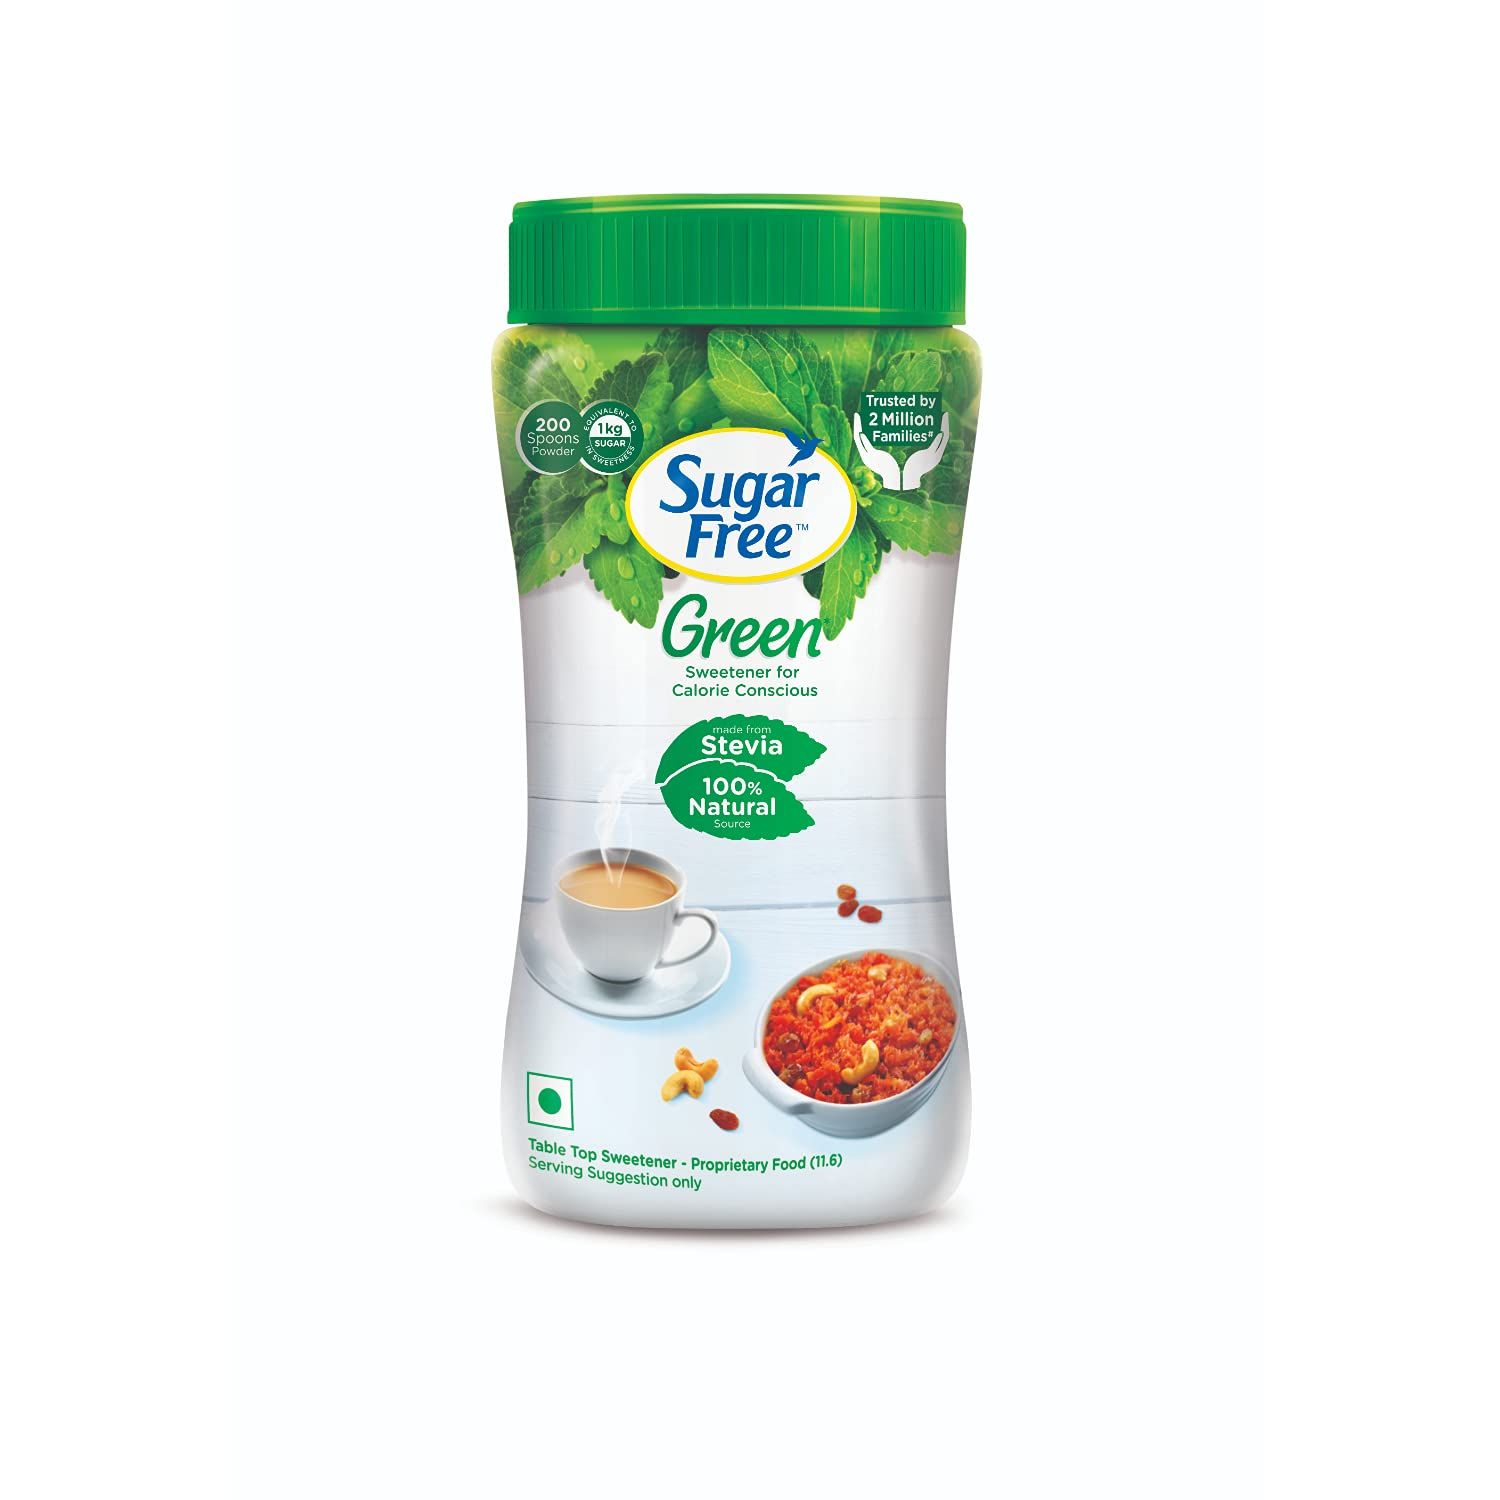 Sugar Free Green Natural Stevia Image